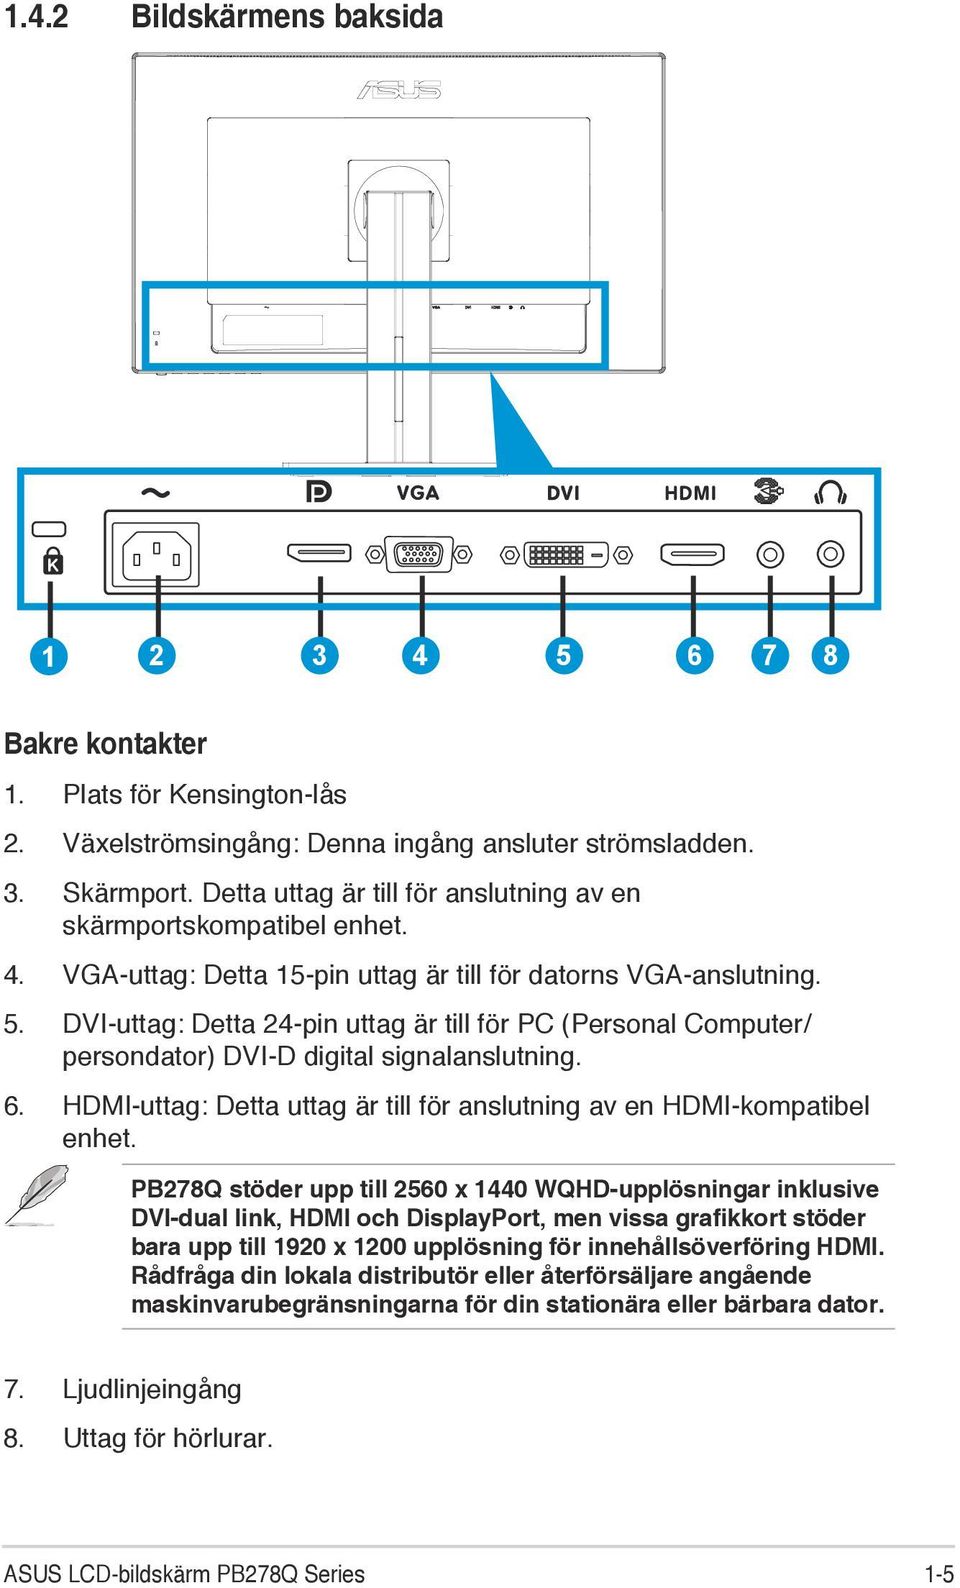 DVI-uttag: Detta 24-pin uttag är till för PC (Personal Computer/ persondator) DVI-D digital signalanslutning. 6. HDMI-uttag: Detta uttag är till för anslutning av en HDMI-kompatibel enhet.